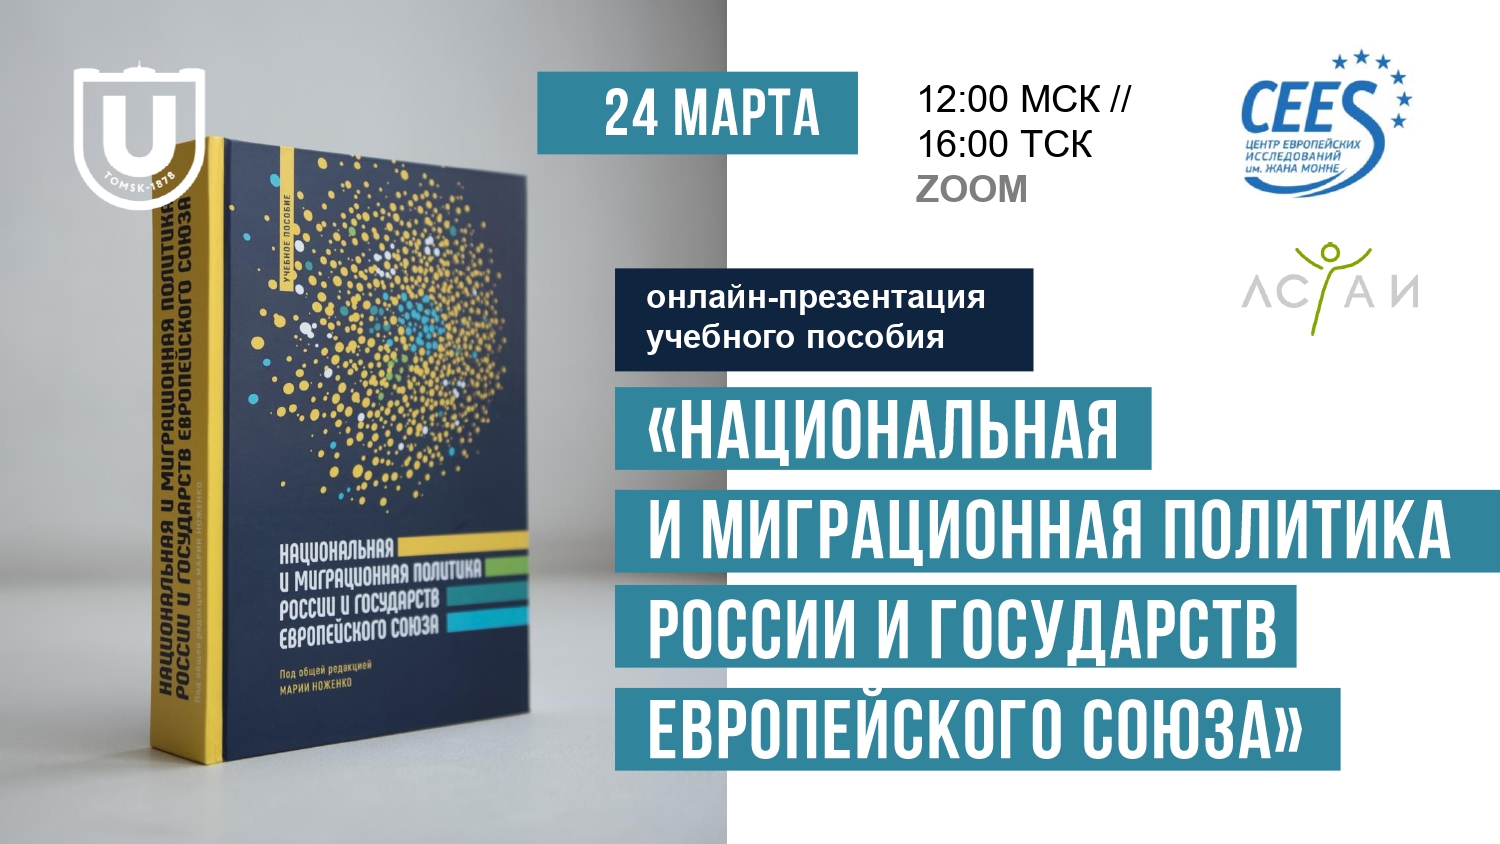 Онлайн-презентация учебного пособия «Национальная и миграционная политика России и государств Европейского союза» - 24 марта 2021 г.